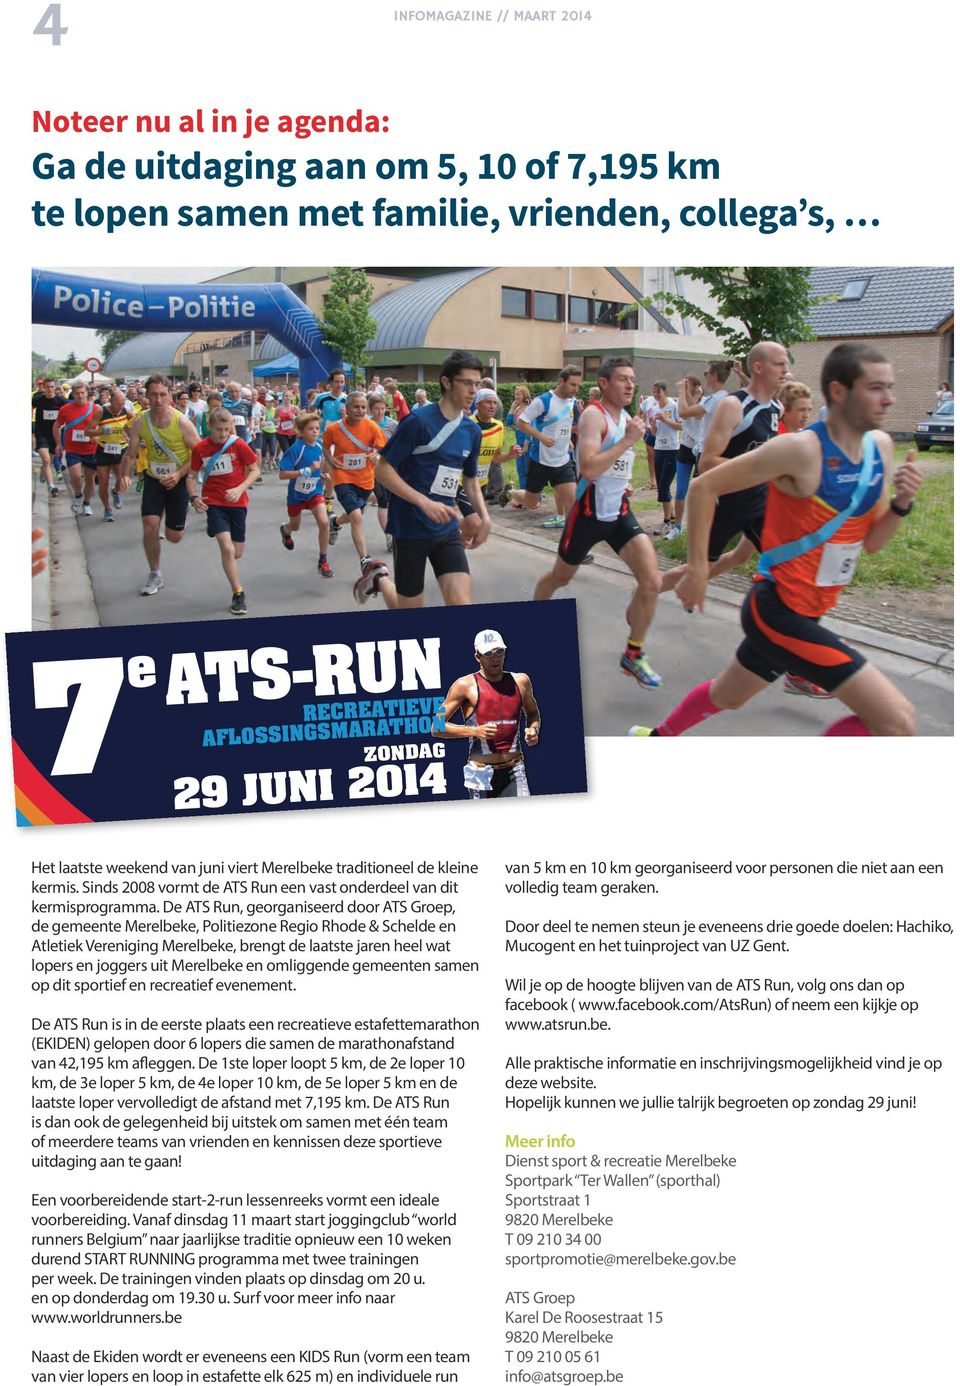 De ATS Run, georganiseerd door ATS Groep, de gemeente Merelbeke, Politiezone Regio Rhode & Schelde en Atletiek Vereniging Merelbeke, brengt de laatste jaren heel wat lopers en joggers uit Merelbeke